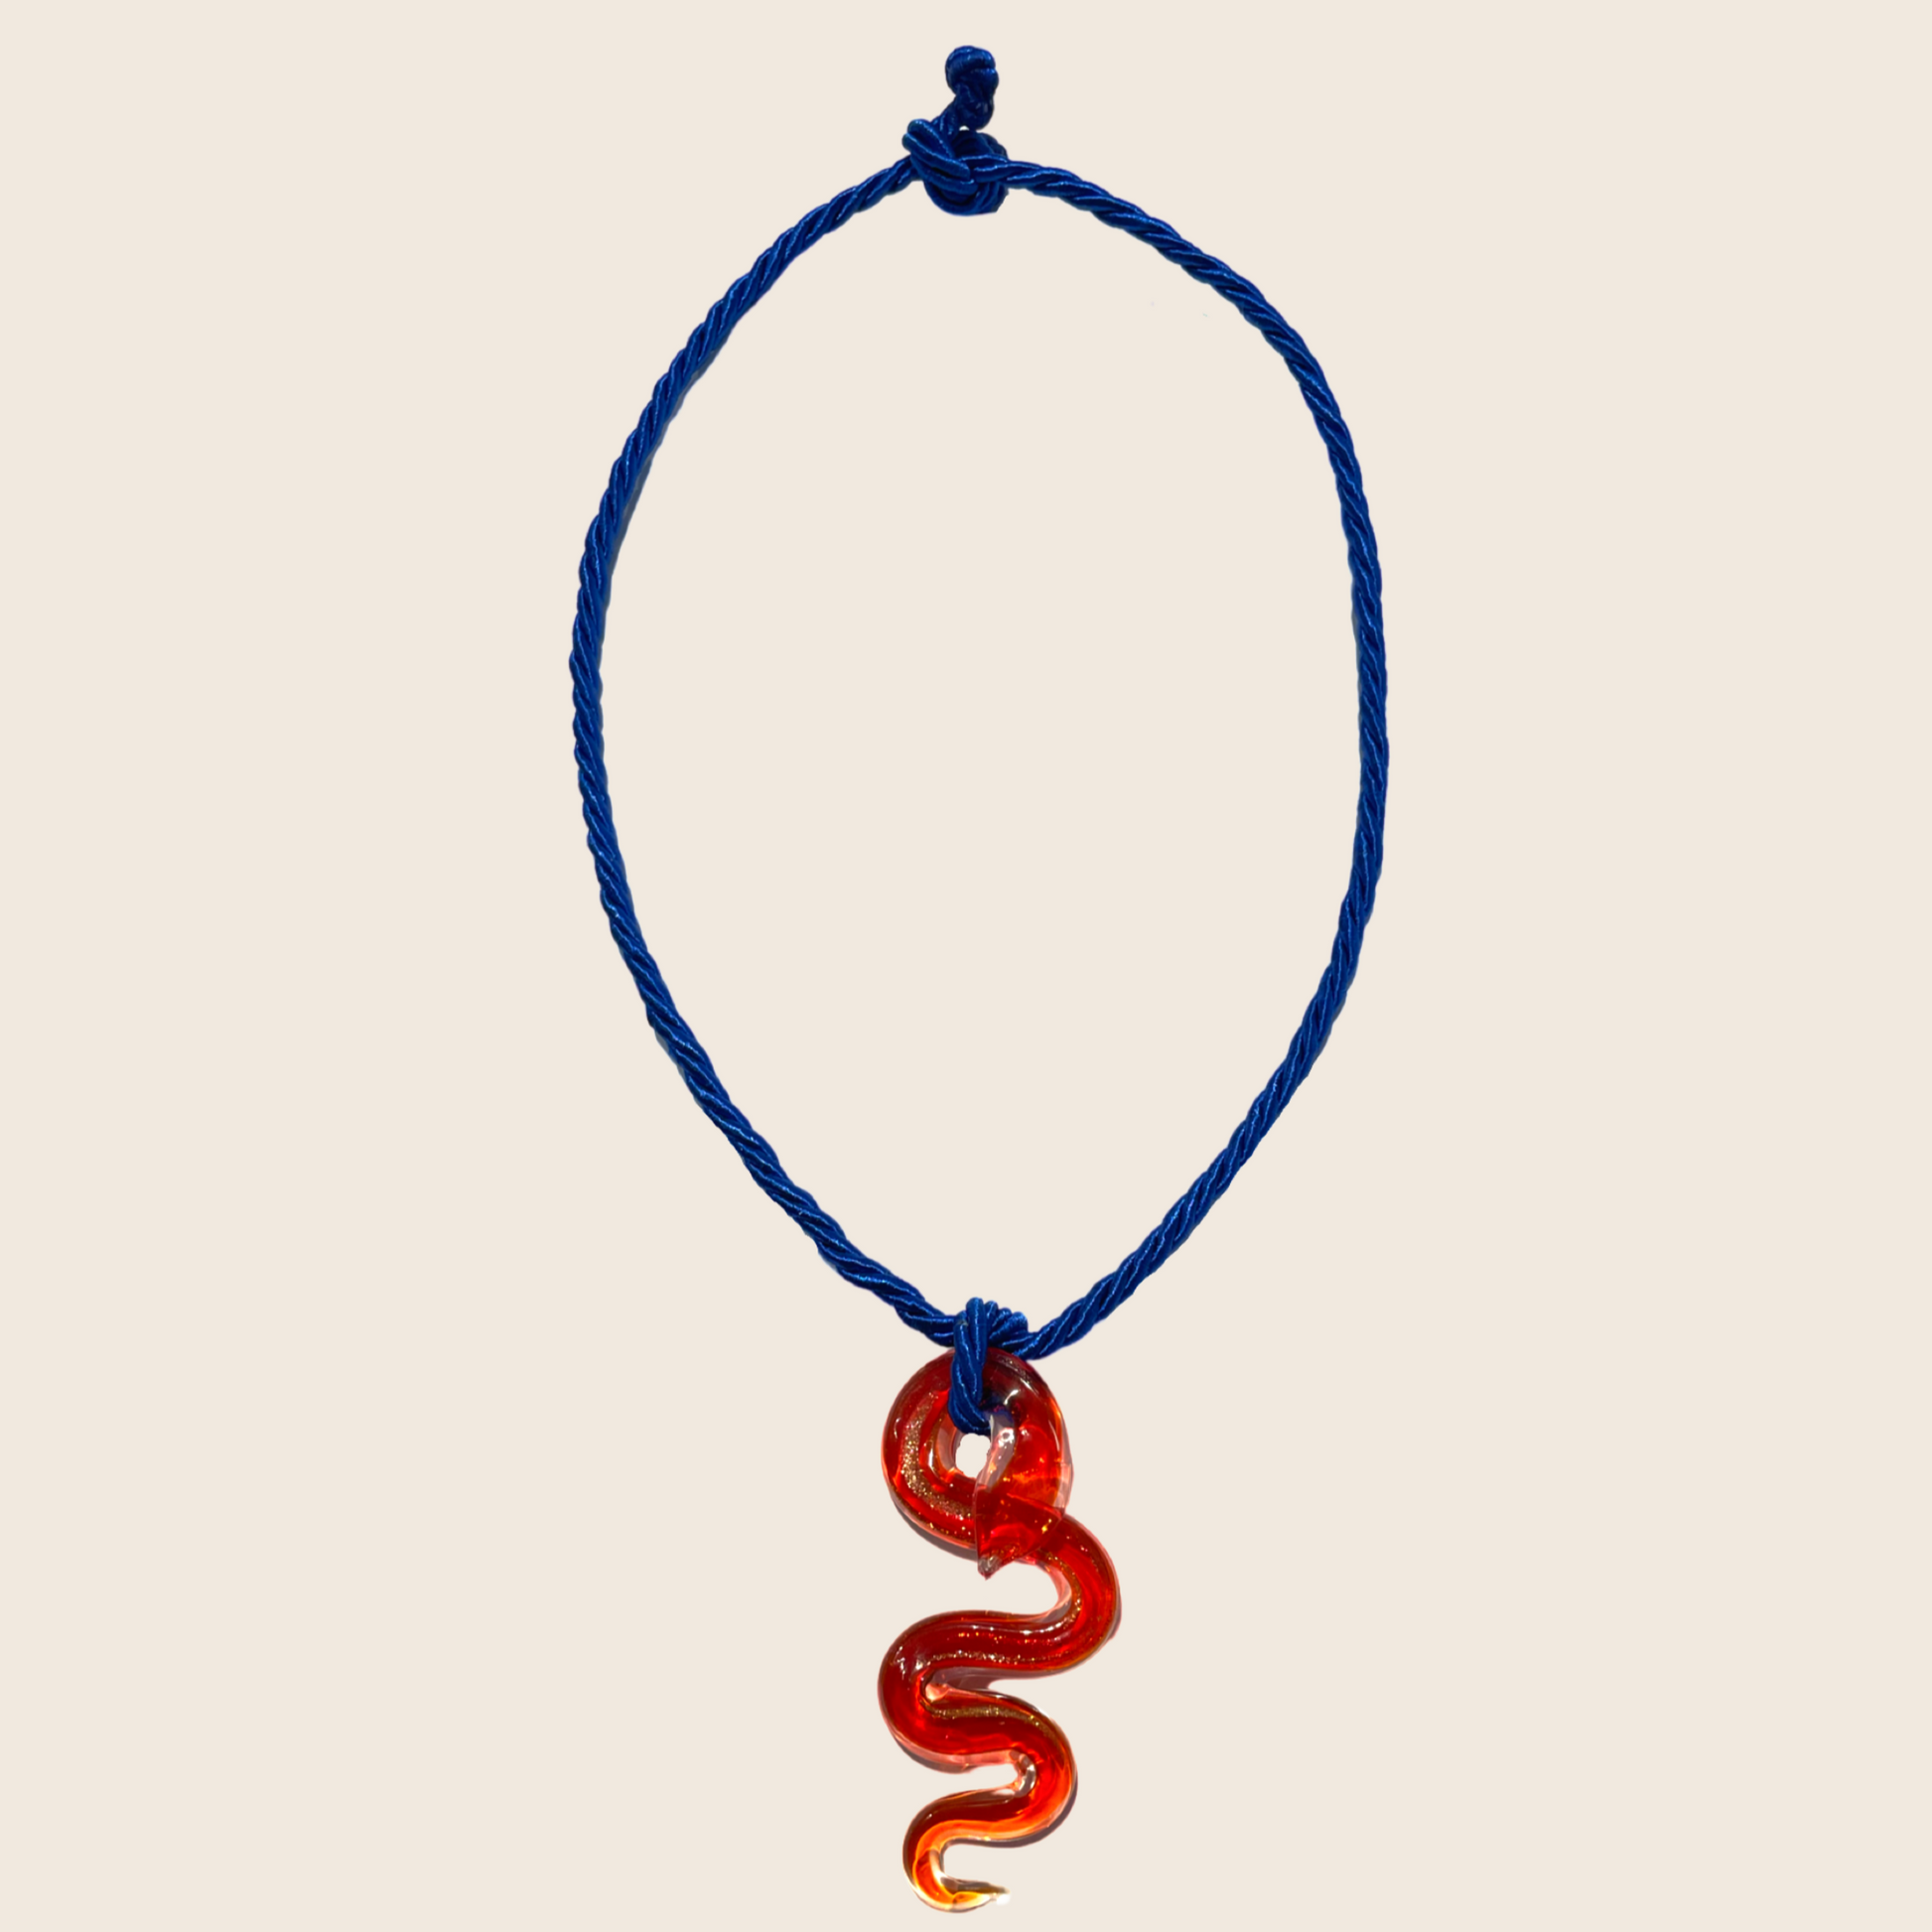 Glass Snake Necklace - Lemon Lua Glass Snake Necklace Lemon Lua Red / Blue Lemon Lua Glass Snake Necklace Glass Snake Necklace